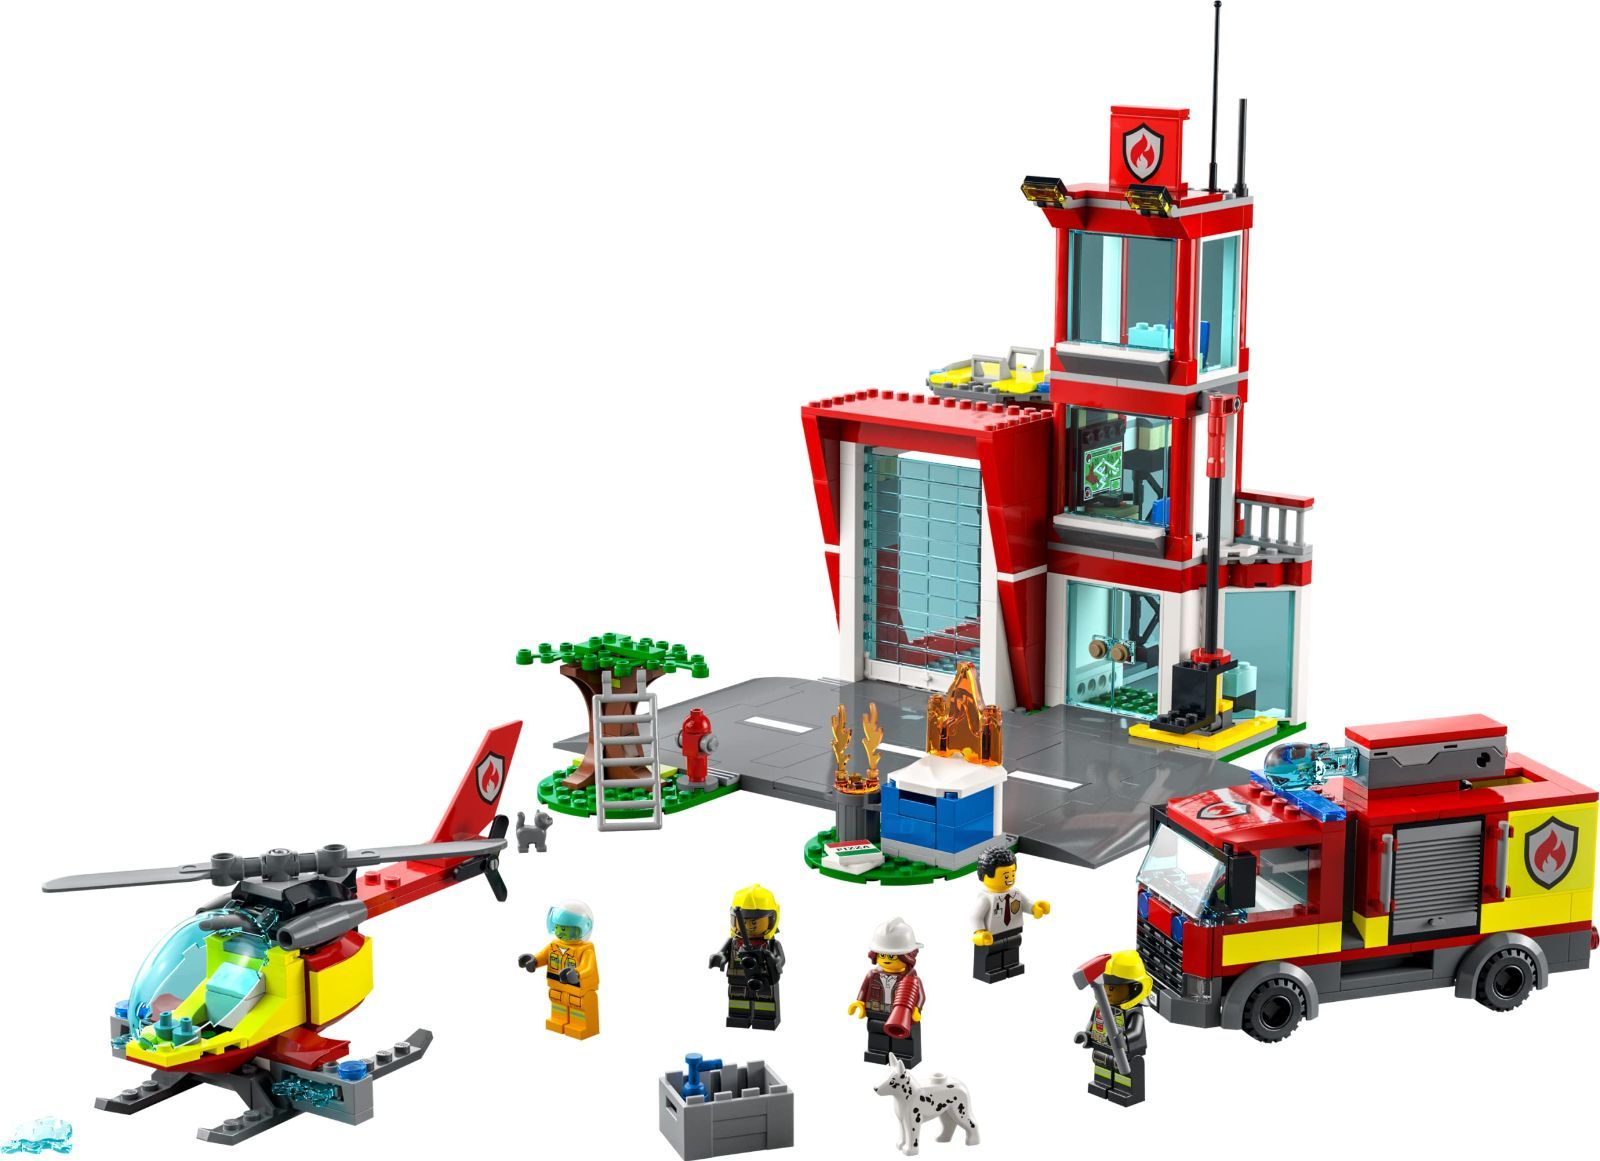 特価商品レゴLEGO シティ 消防署 60320 おもちゃ ブロック プレゼント